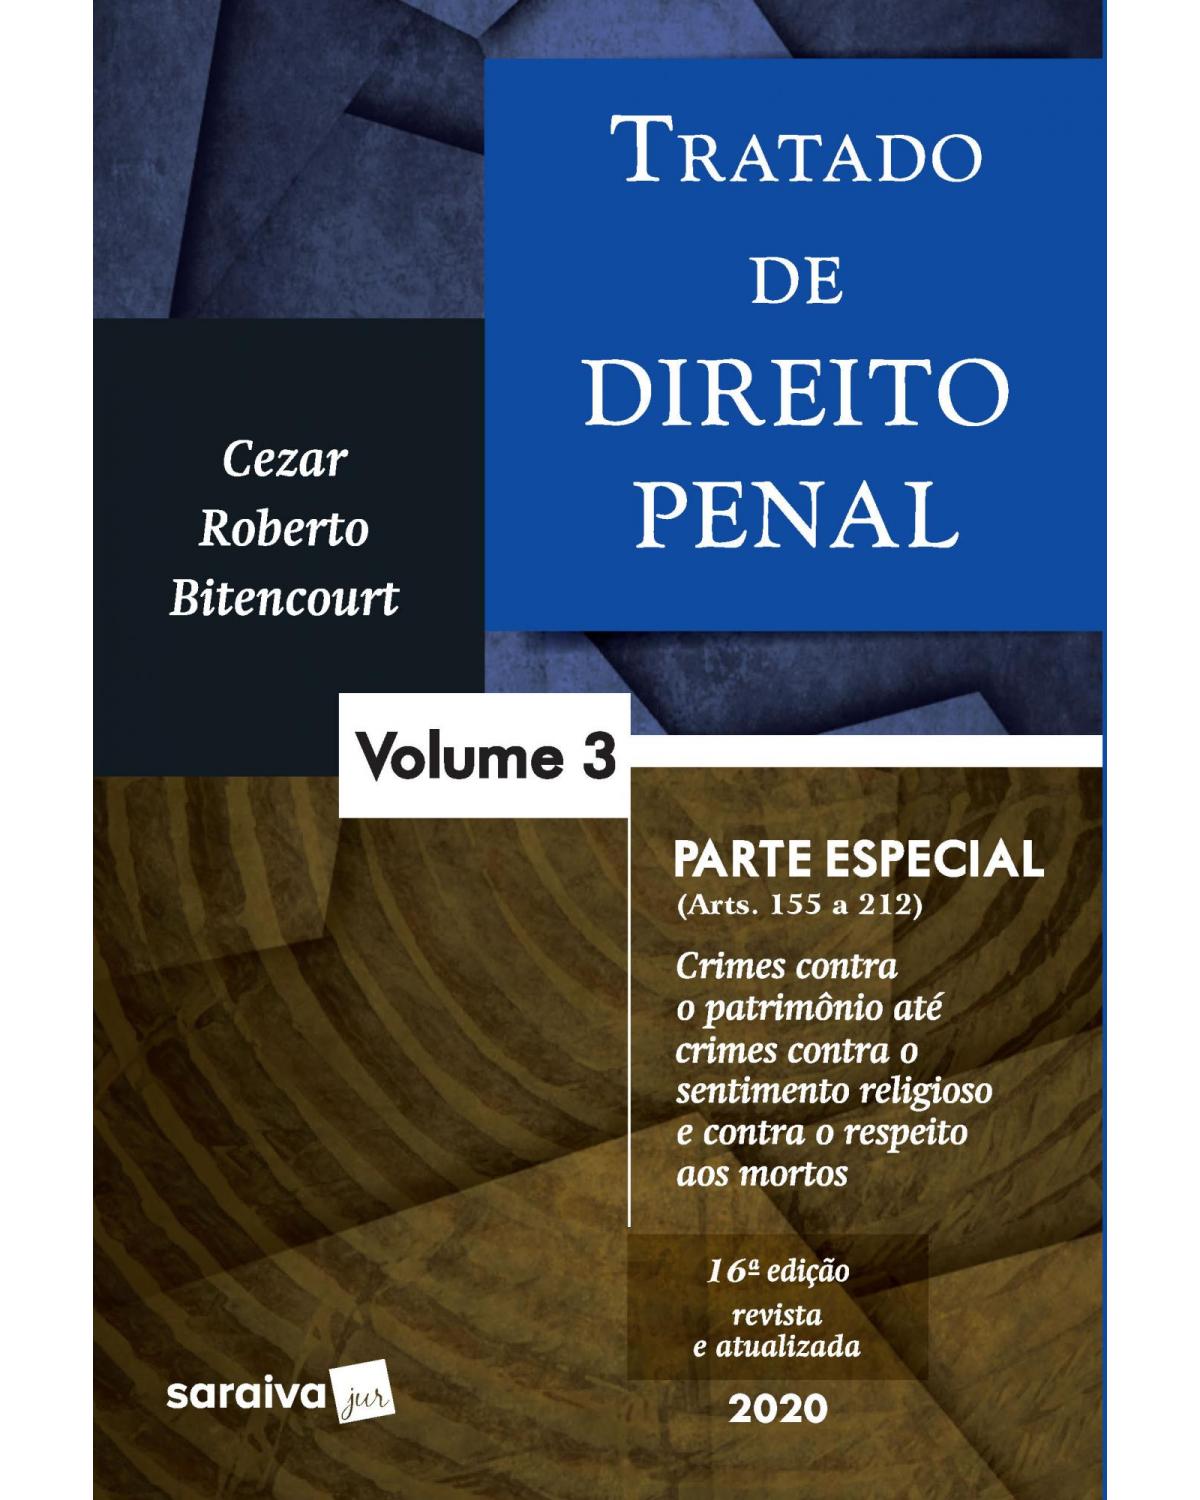 Tratado de direito penal - Volume 3: parte especial - 16ª Edição | 2020